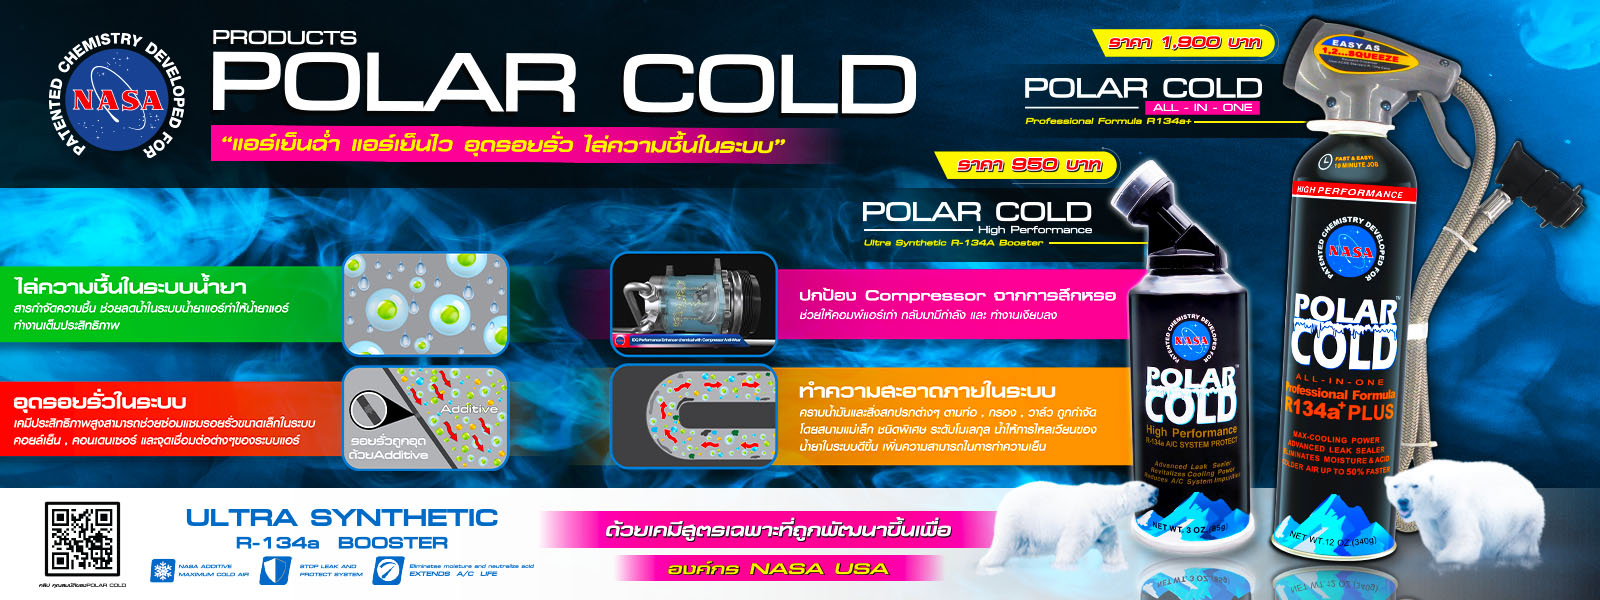 หนาเวบ POLAR COLD 1600x600